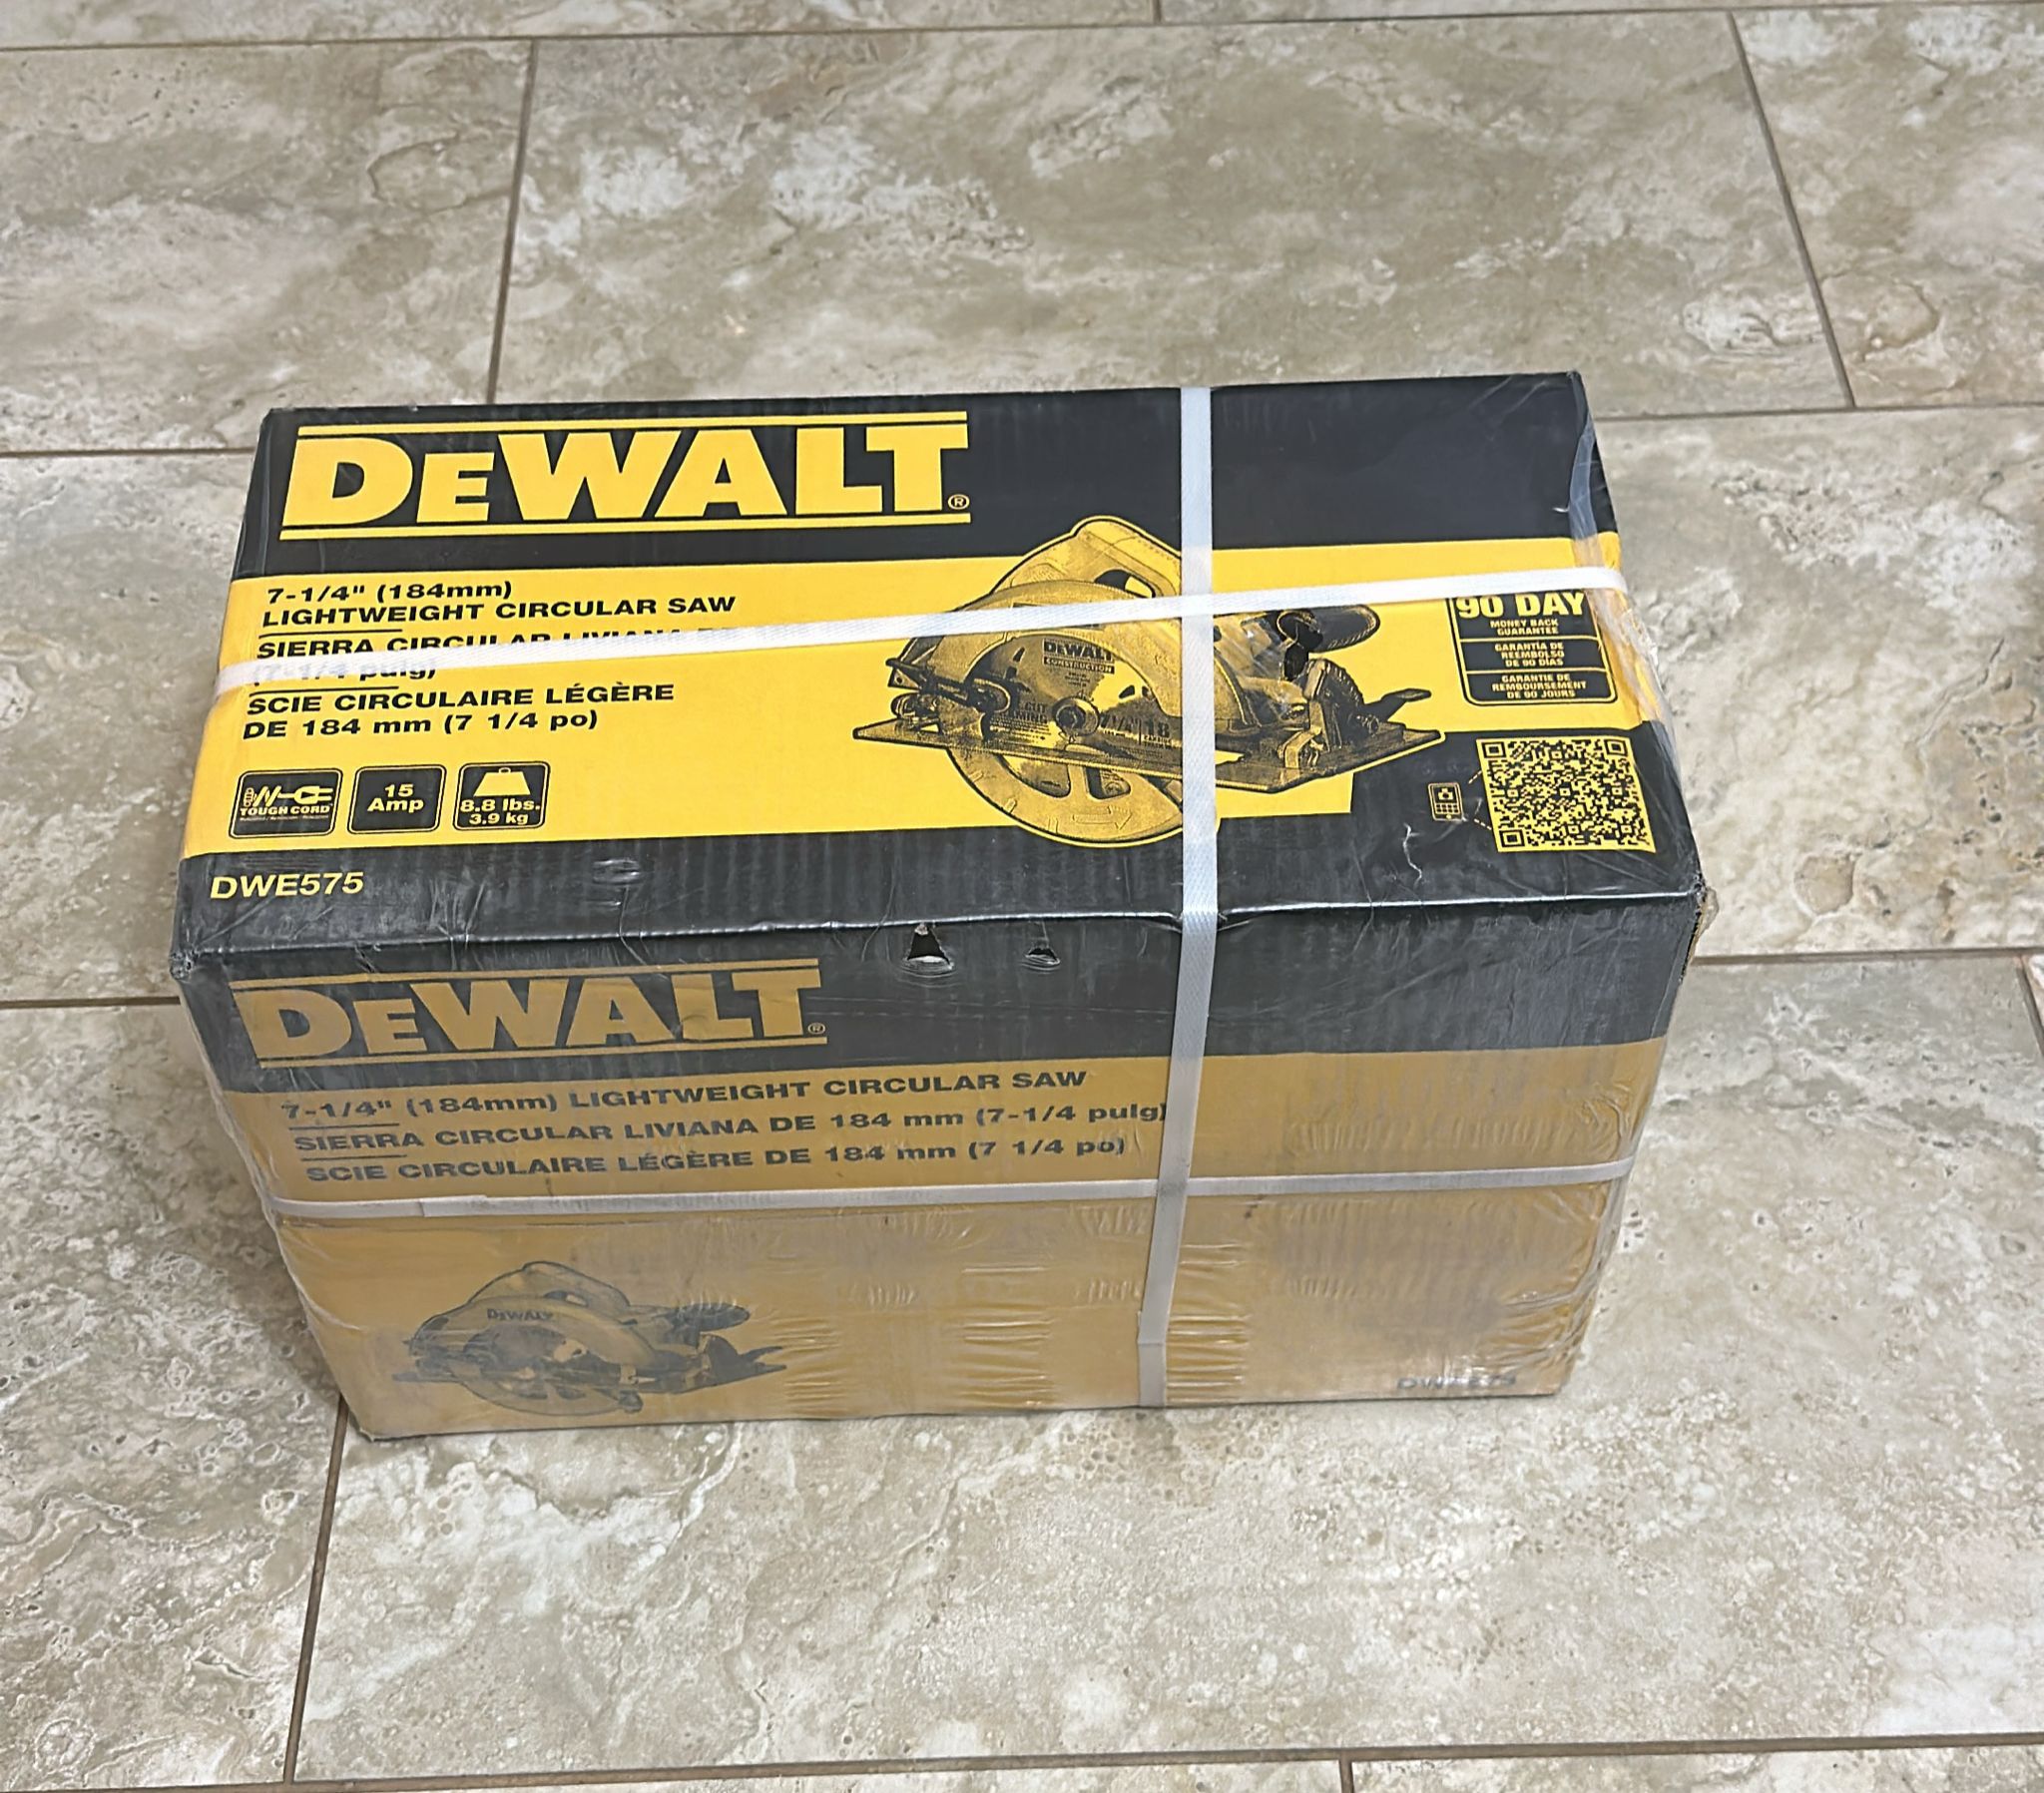 DEWALT DWE575 Lightweight Circulat Saw - Yellow